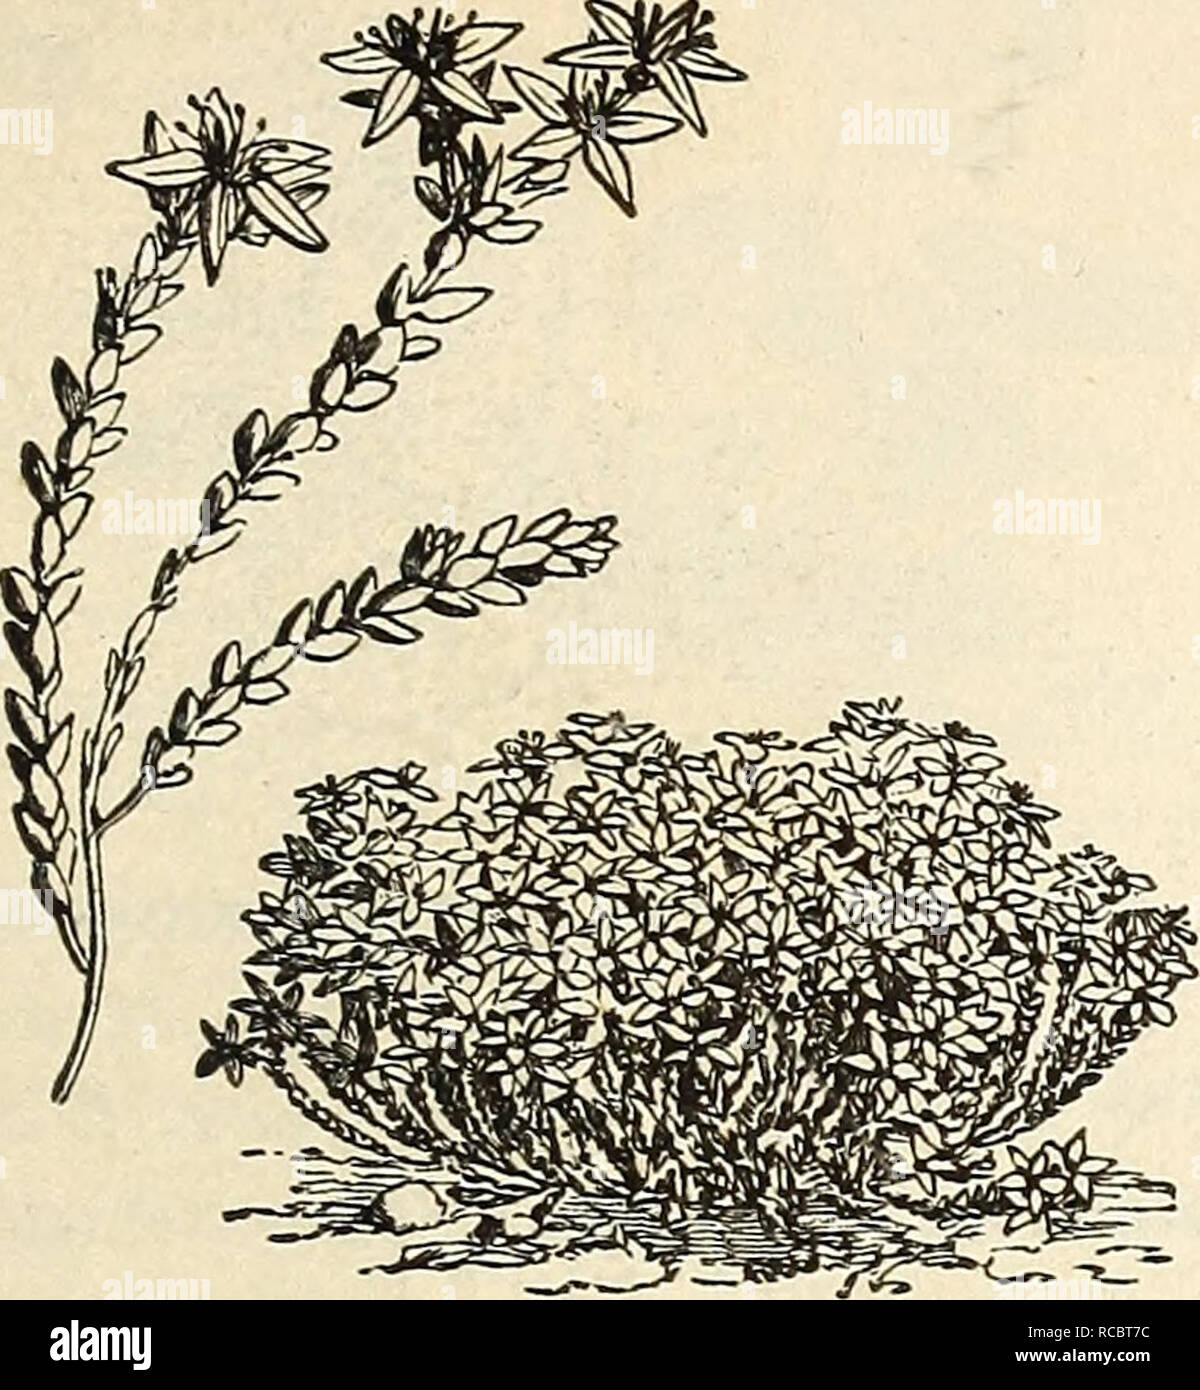 . Ellwanger &amp; Barry's general catalogue : Mount Hope nurseries. GENERAL CATALOGUE. 81 Saxifrag-a (Saxifrage). lingulata rubra. Sibirica. Schmidtii. Sedum (Stone-Crop).. SEDTJM ACRE. ^cre. Aizoon. album. anacampseros. atropurpureum. cruceatum. Tiybriduin. Kamtscliaticuin. Maximowiczii. oppositifolium. populifolium. pulcliellum. pvxrpurascens. robustum or monstrosum. Kodigasi. spectabile. spurium. Telephium hybridum. Telephium purpureum. villosum. ^empervivum (House-Leek). tectorum. .Sileoe (Catchfly). Vallesii. viscosa plena. Silpliium (Rosin-Plant). perfoliatum. iSpirgea (Meadow Sweet). Ar Stock Photo